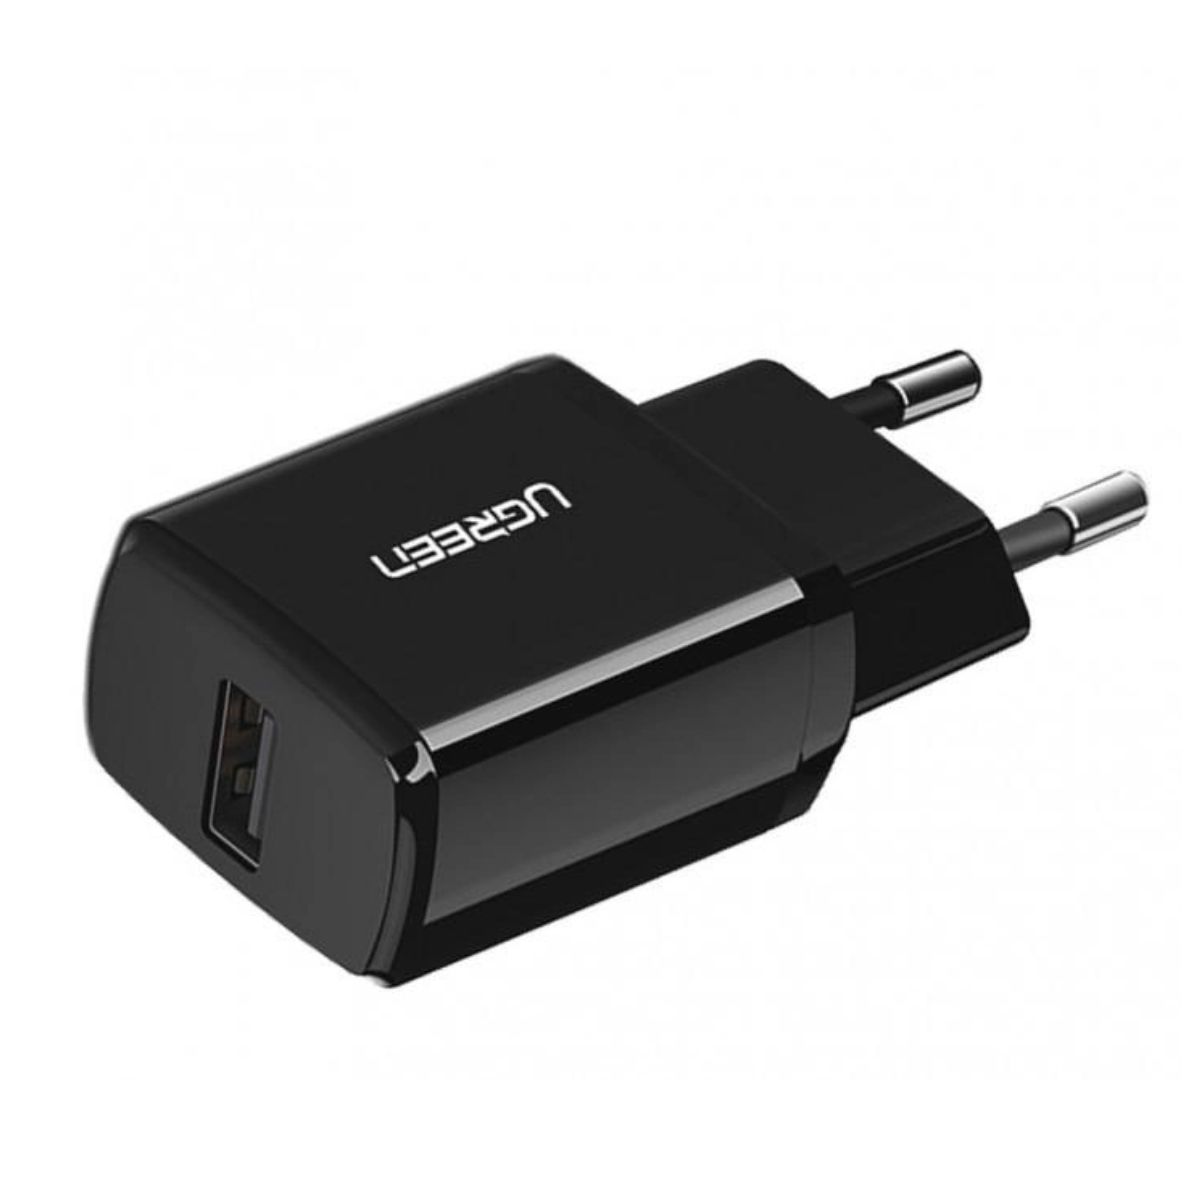 Củ sạc tường USB Ugreen 50459 ED011 màu đen, 5V/2.1A công suất 10.5W